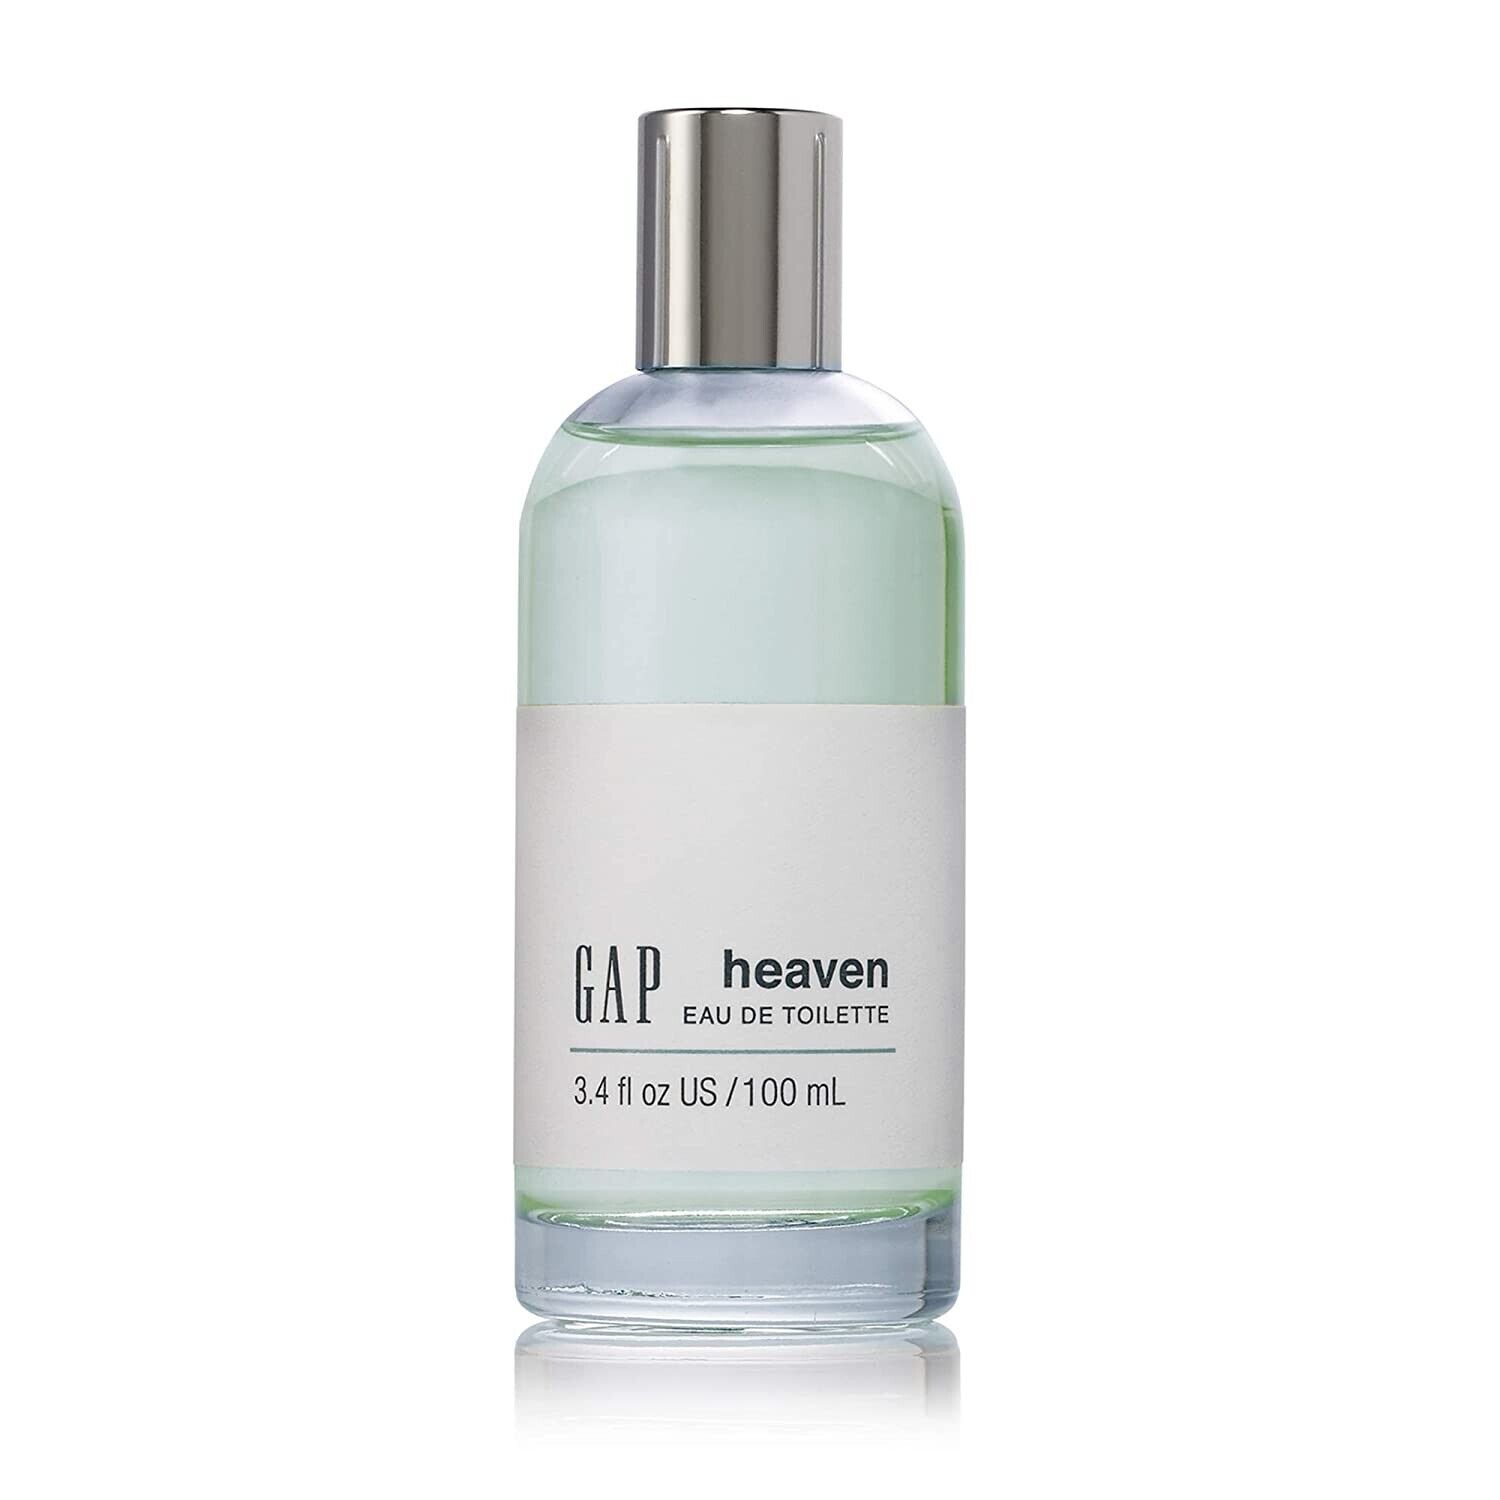 Heaven by Gap, Women's Eau de Toilette Spray 2020 Design - 3.4 oz 100 mL